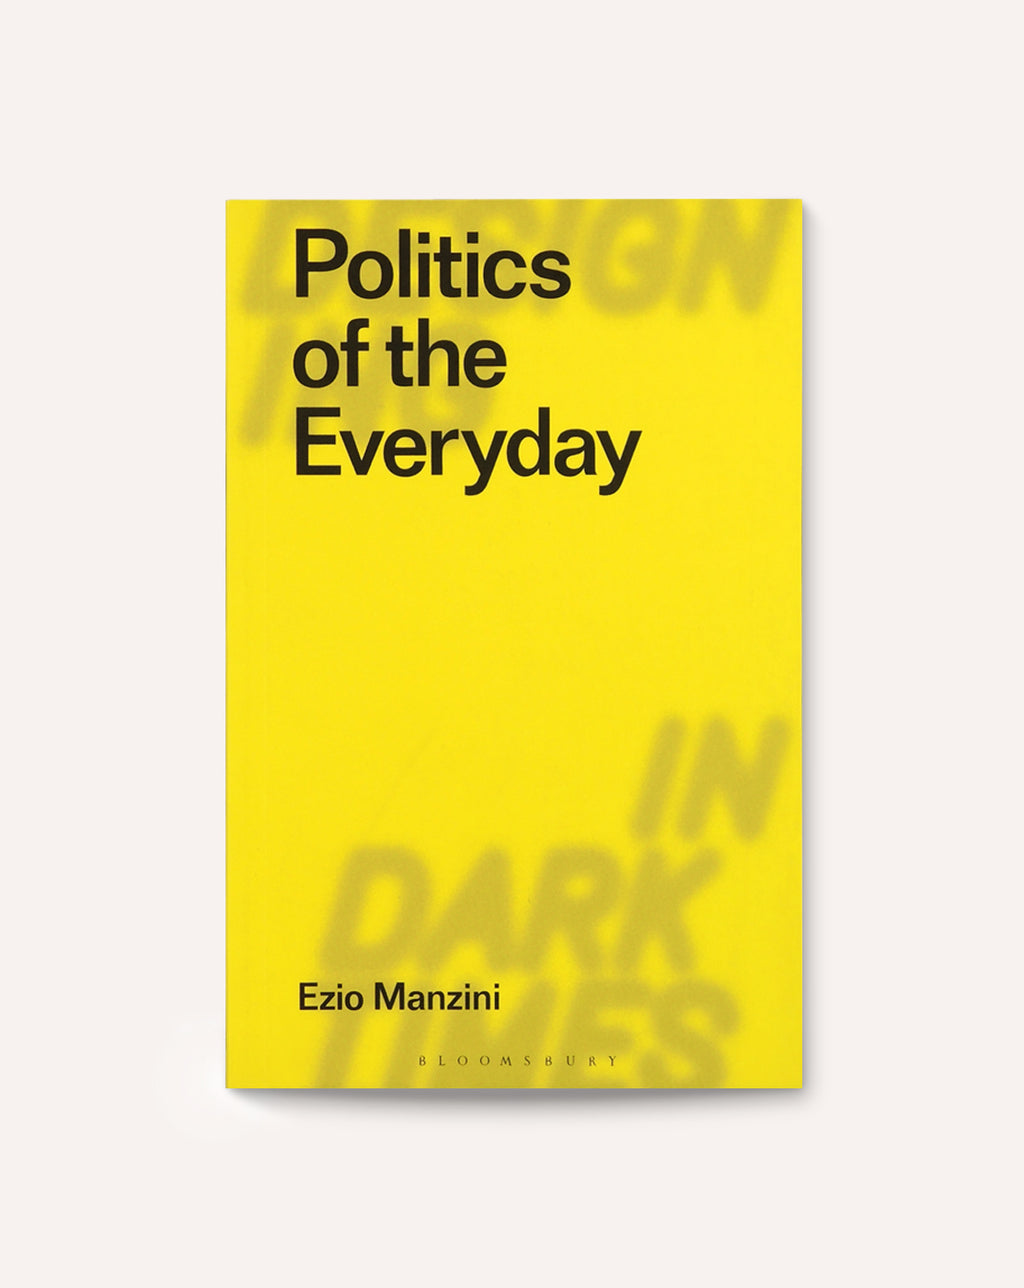 Politics of the Everyday